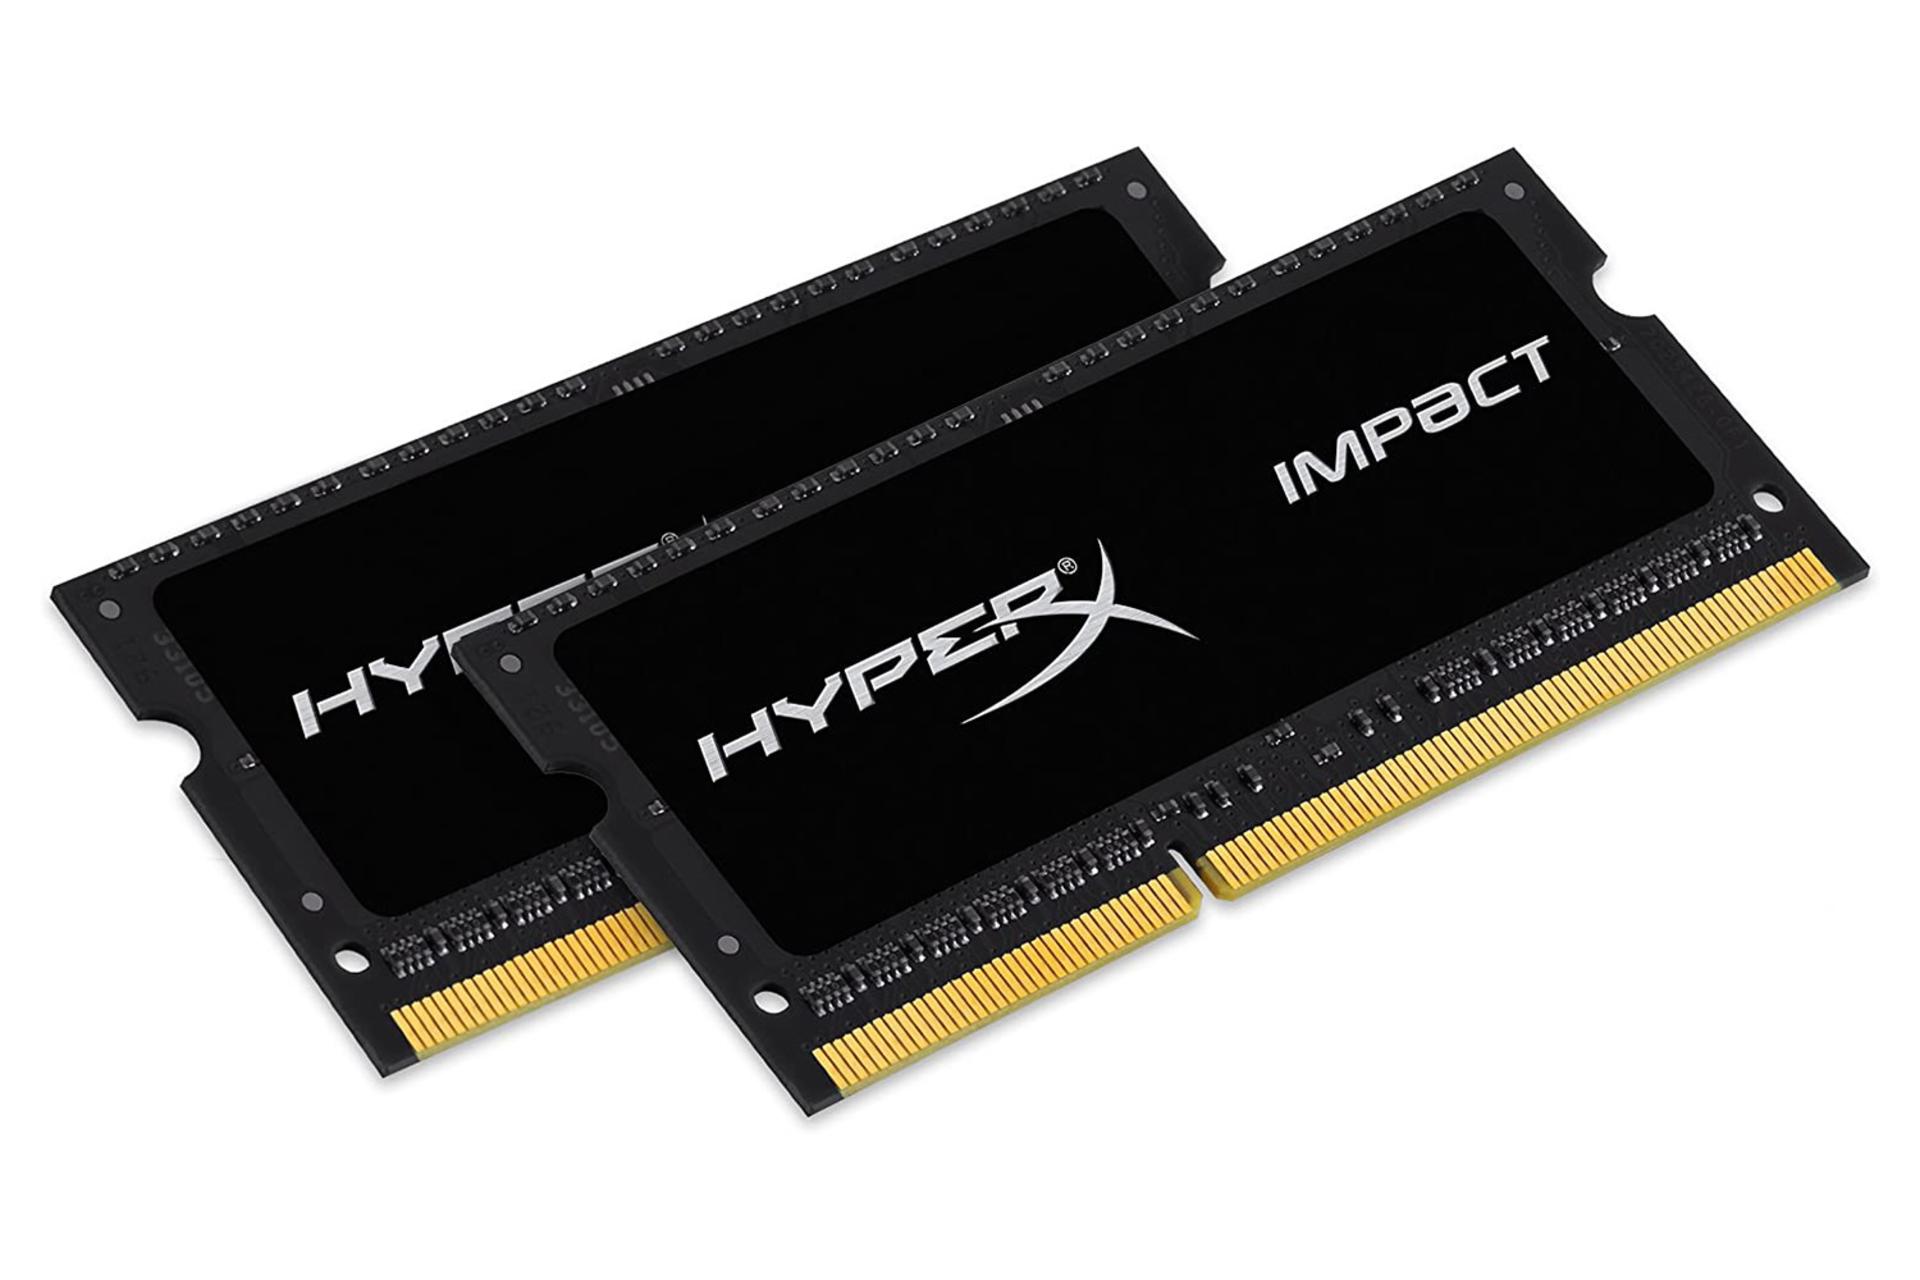 رم هایپر ایکس IMPACT ظرفیت 8 گیگابایت از نوع DDR3L-1600